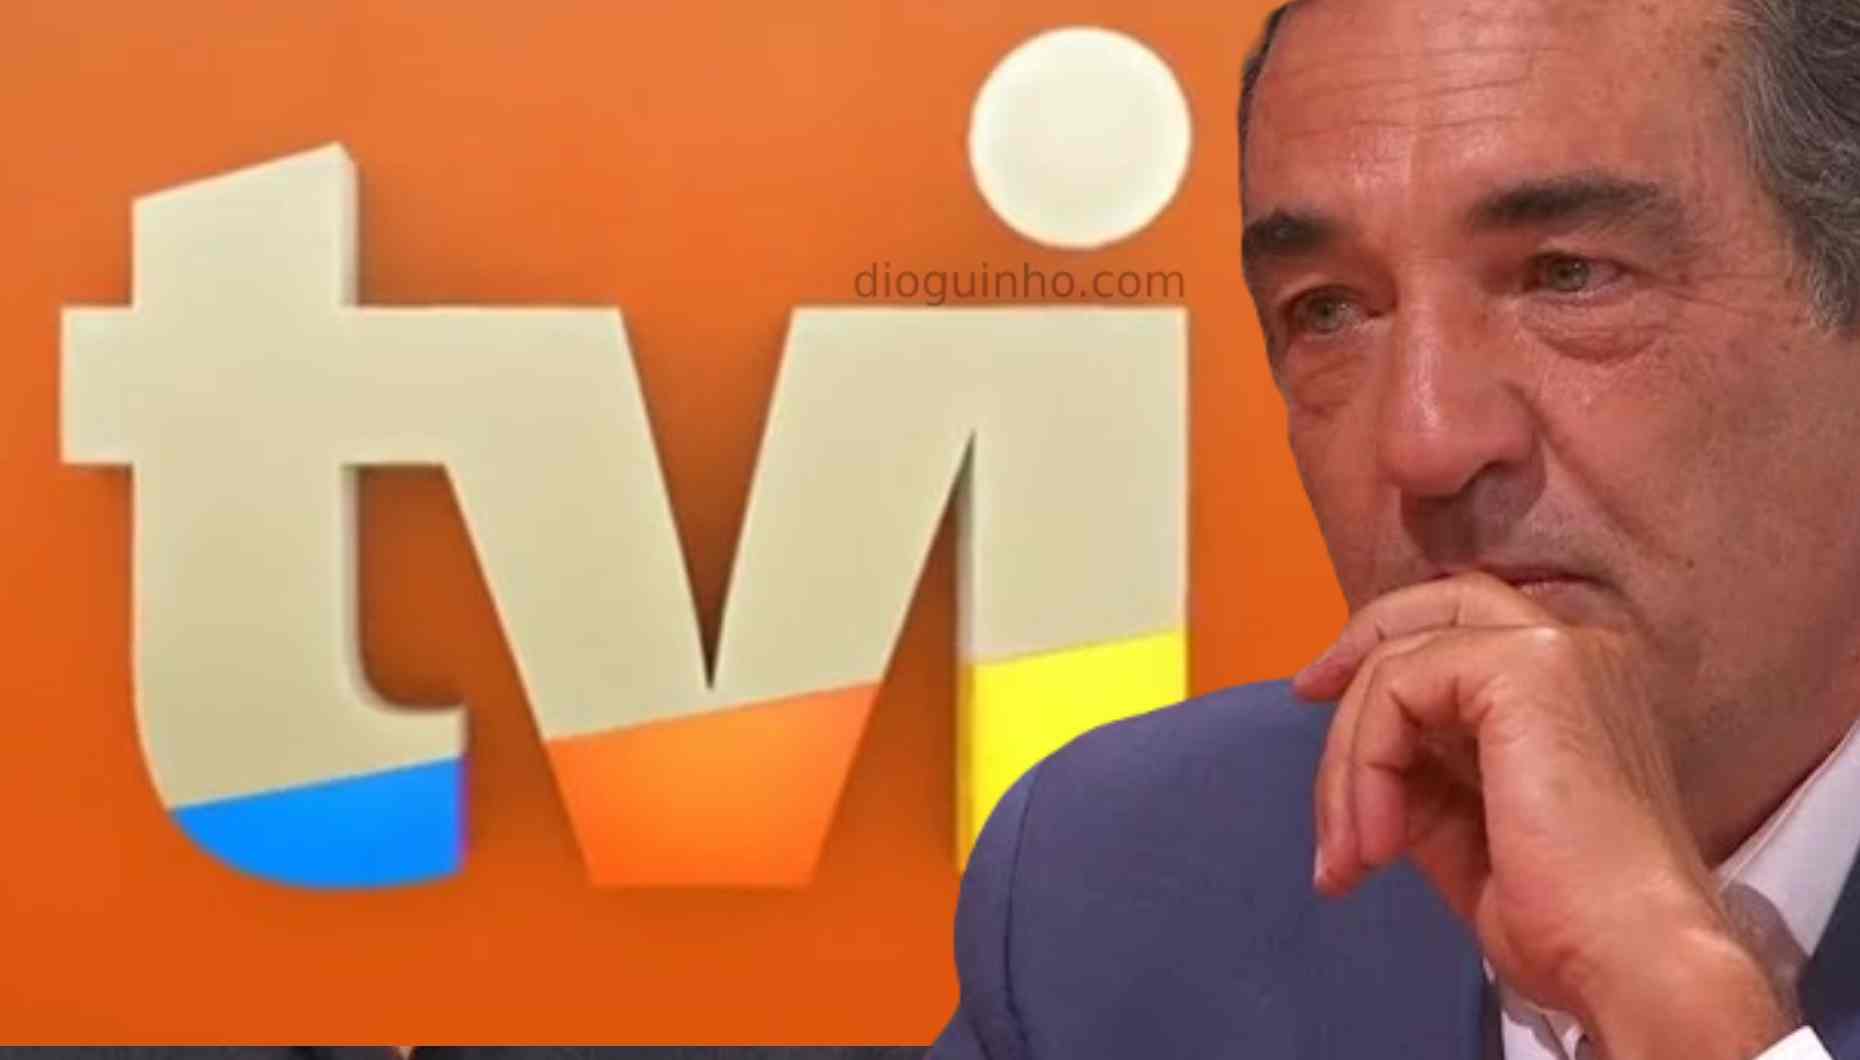 Escândalo leva TVI a afastar-se de Júlio Magalhães! O comunicado oficial